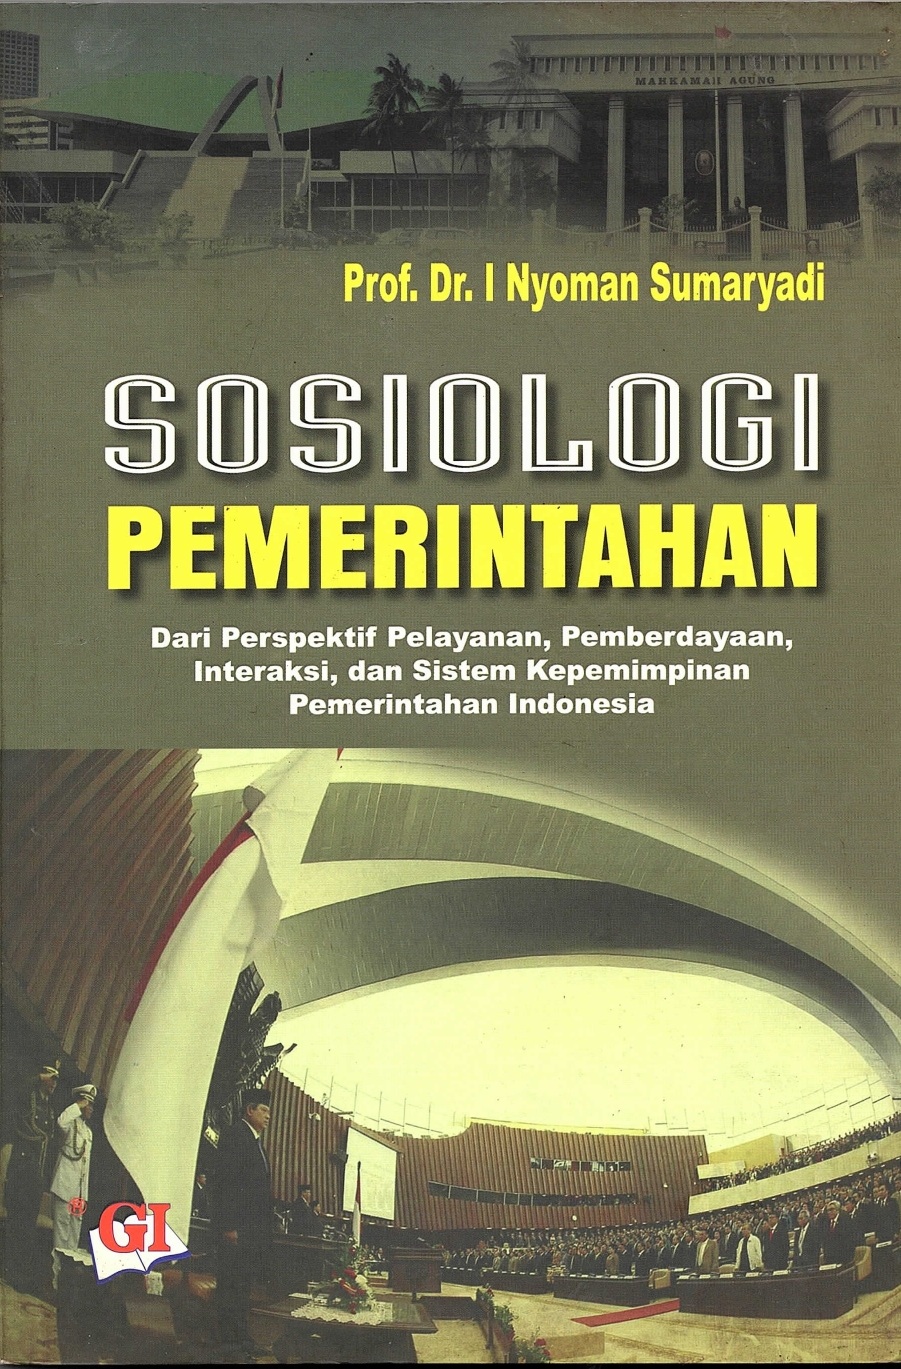 Sosiologi pemerintahan dari prespektif pelayanan, pemberdayaan, interaksi, dan sistem kepemimpinan pemerintahan indonesia 